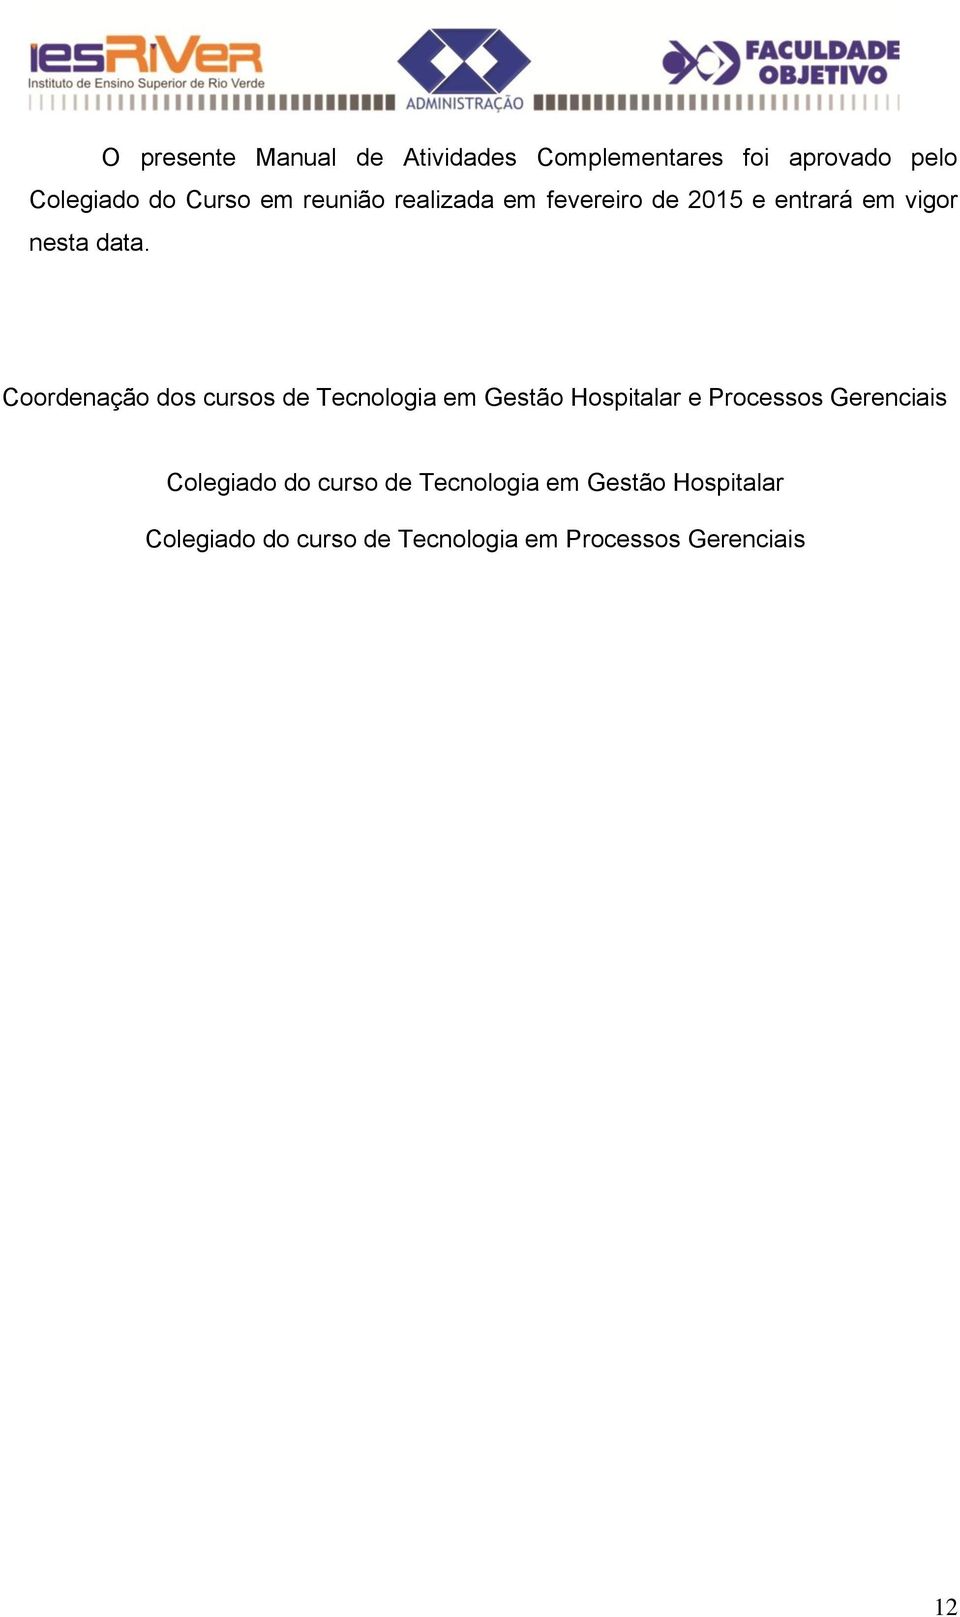 Coordenação dos cursos de Tecnologia em Gestão Hospitalar e Processos Gerenciais